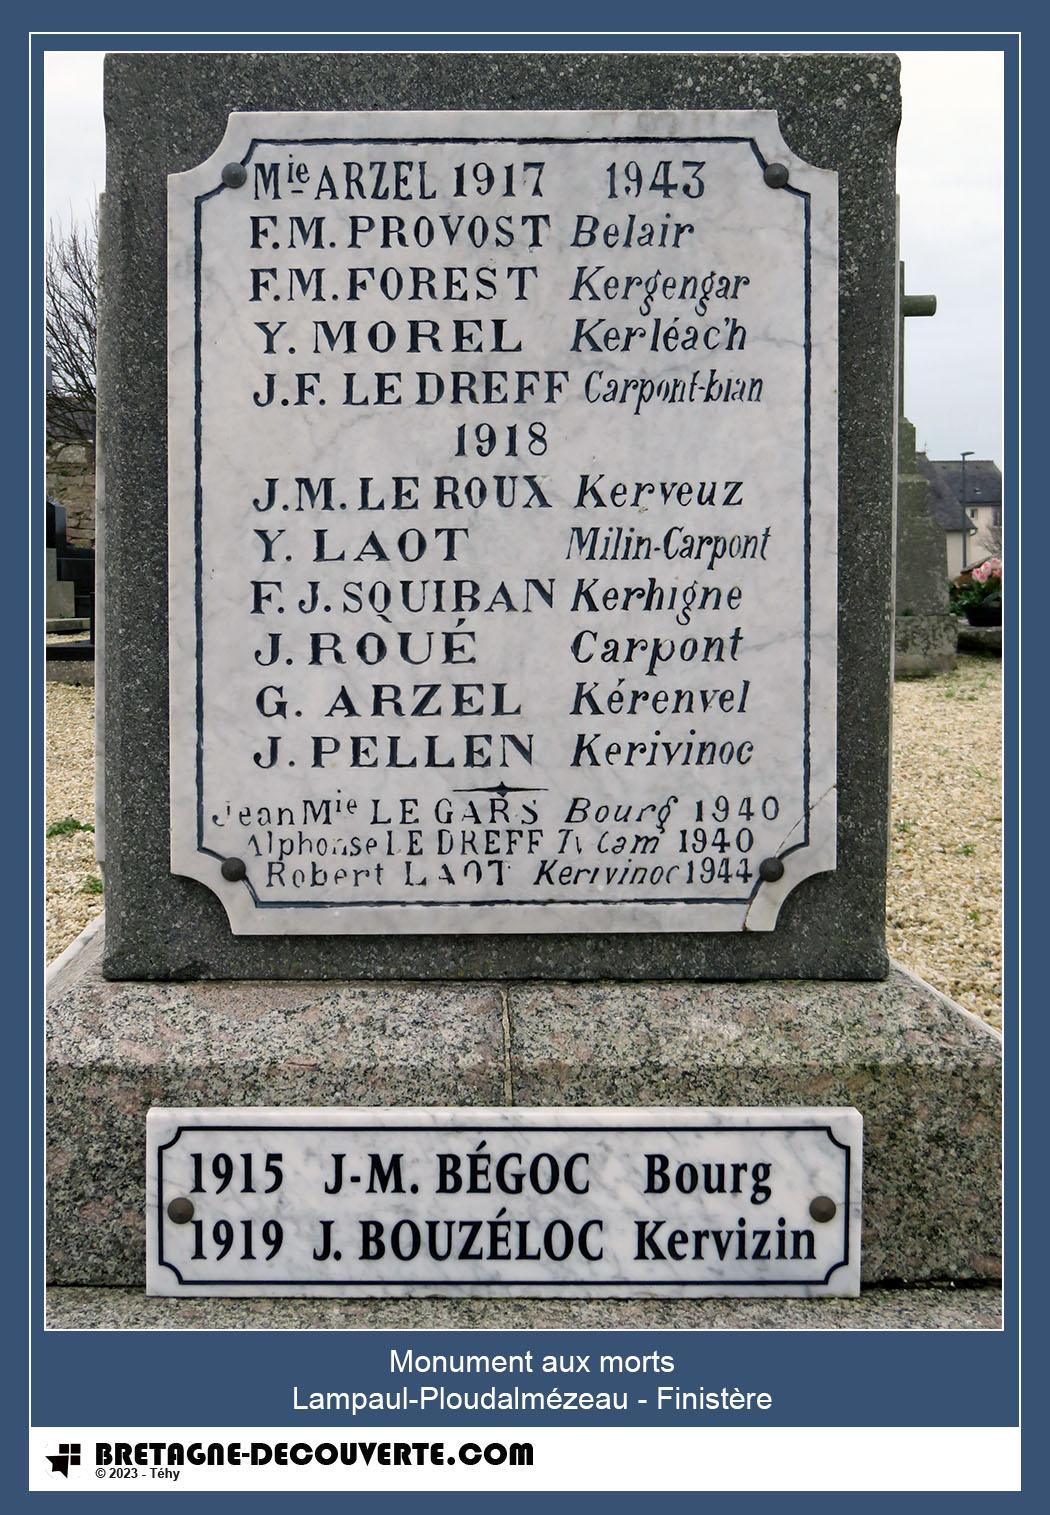 Les noms gravés sur le monument aux morts de Lampaul-Ploudalmézeau